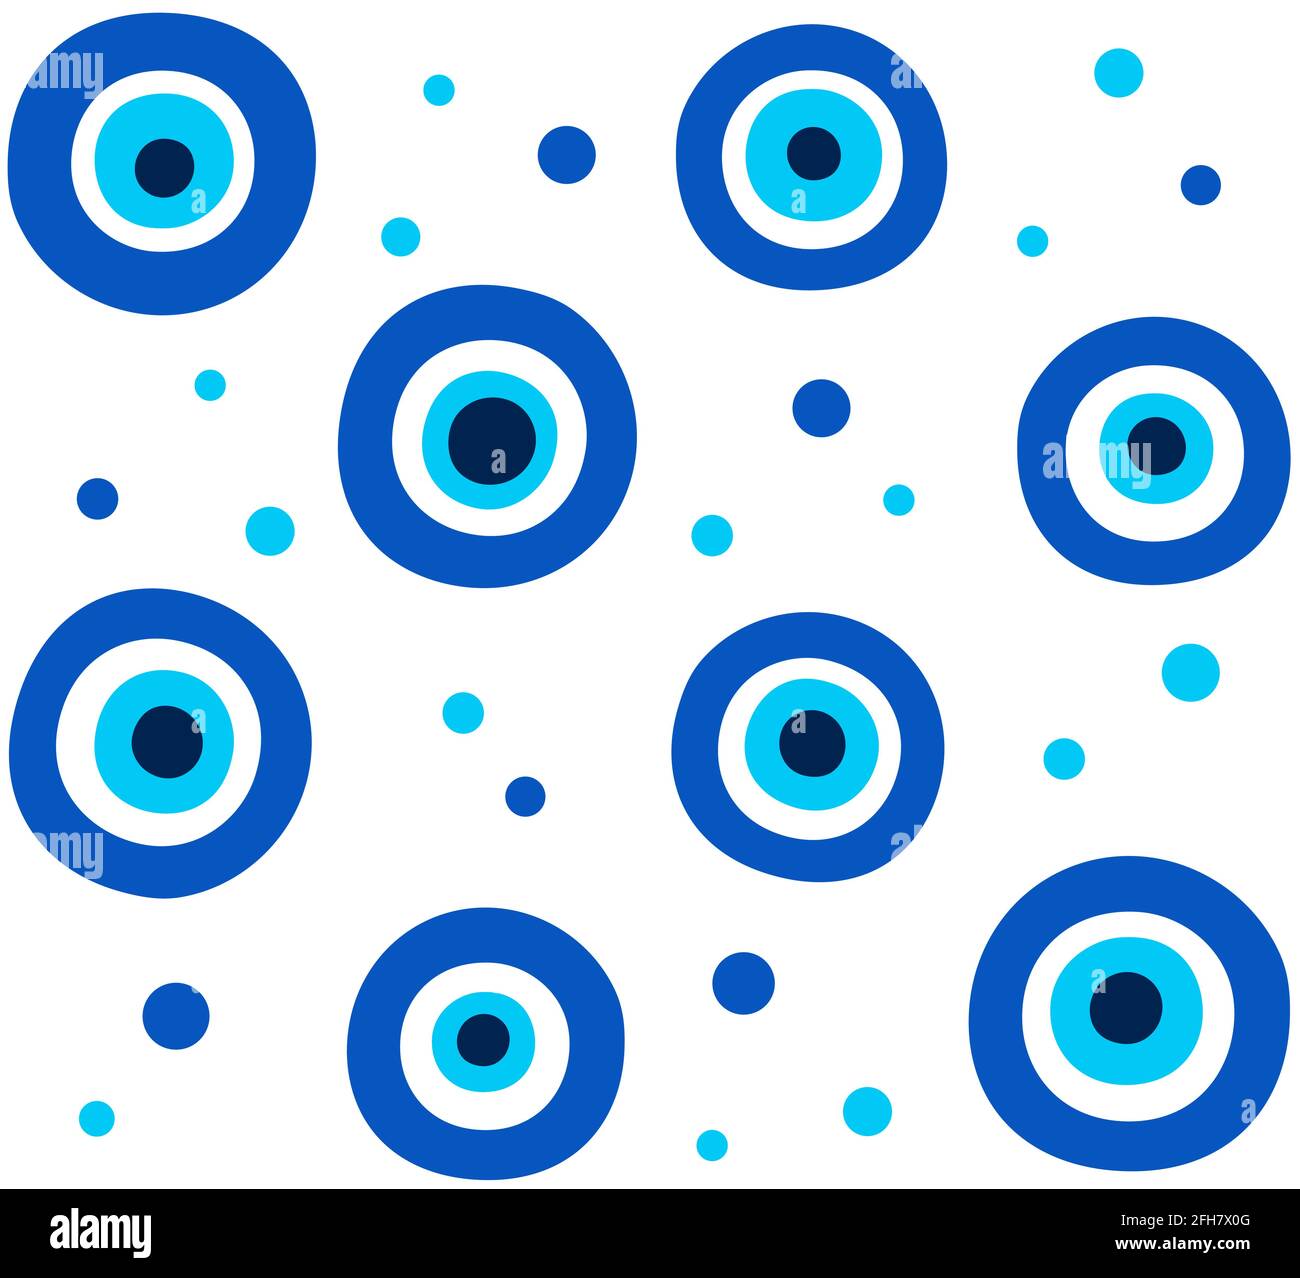 Nazar Boncugu, Türkisches Böses Auge. Abstraktes blaues Auge-Nahtloses Muster. Vektorgrafik Hintergrund Textur Illustration. Stock Vektor